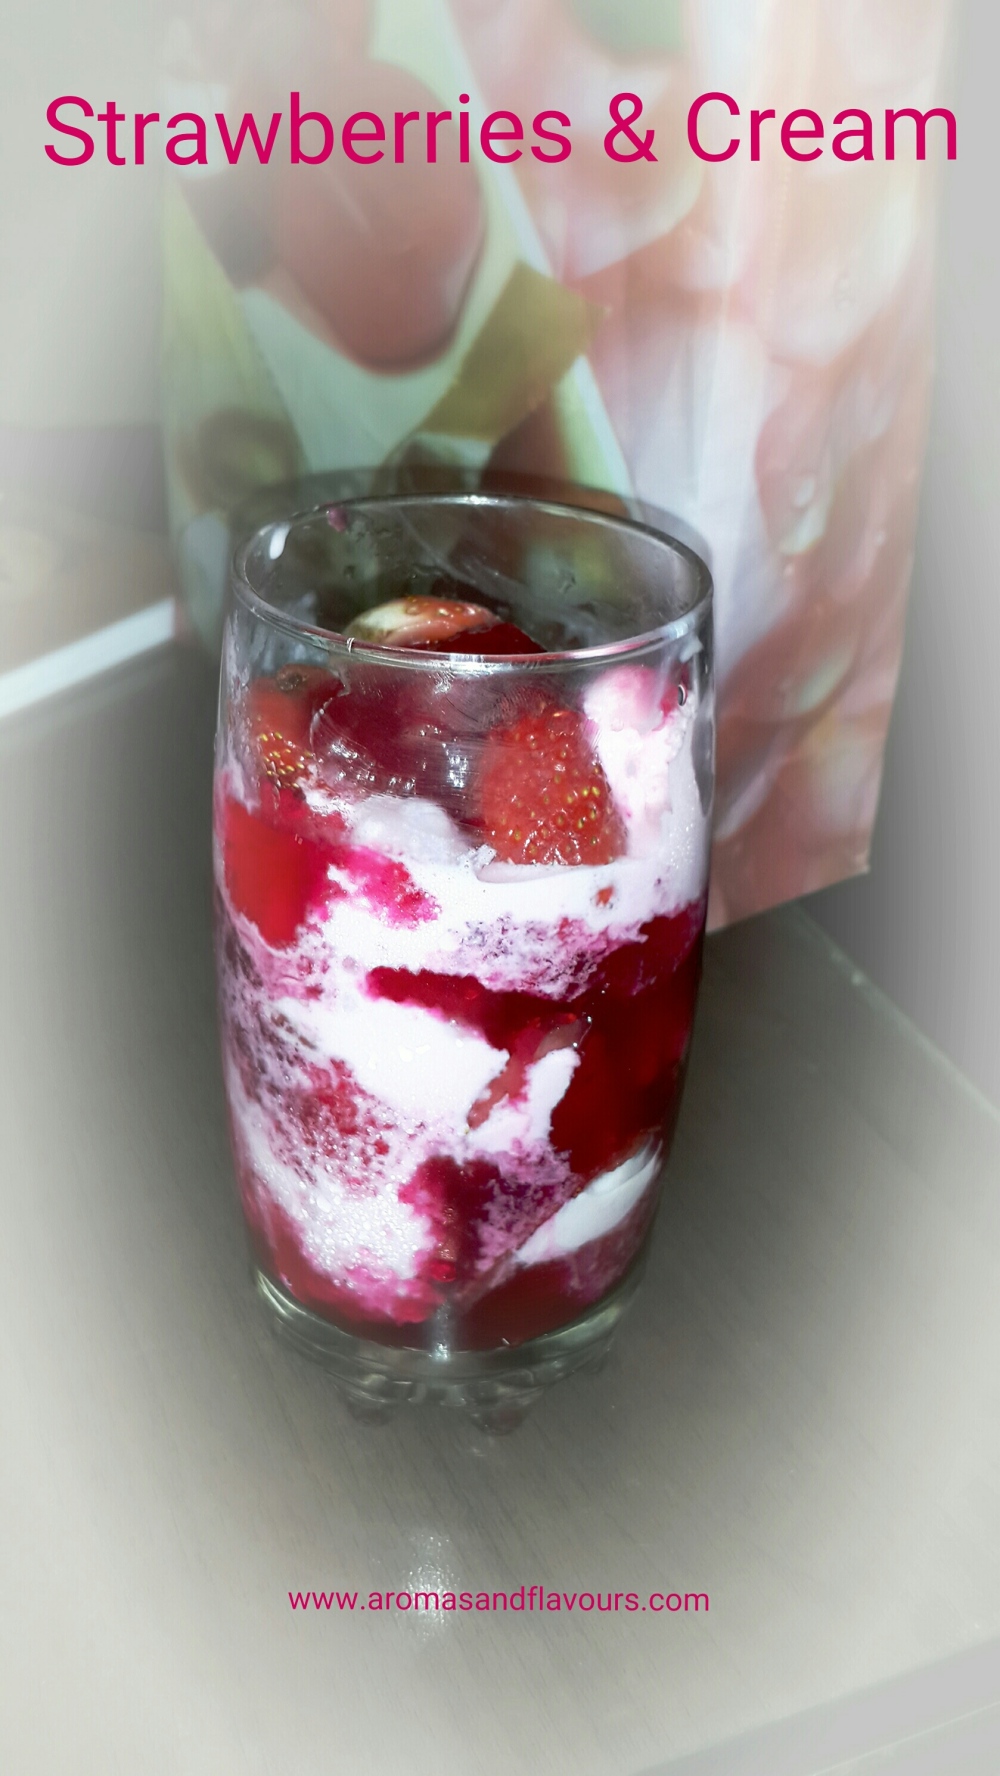 Strawberries and cream-delicious cold dessert